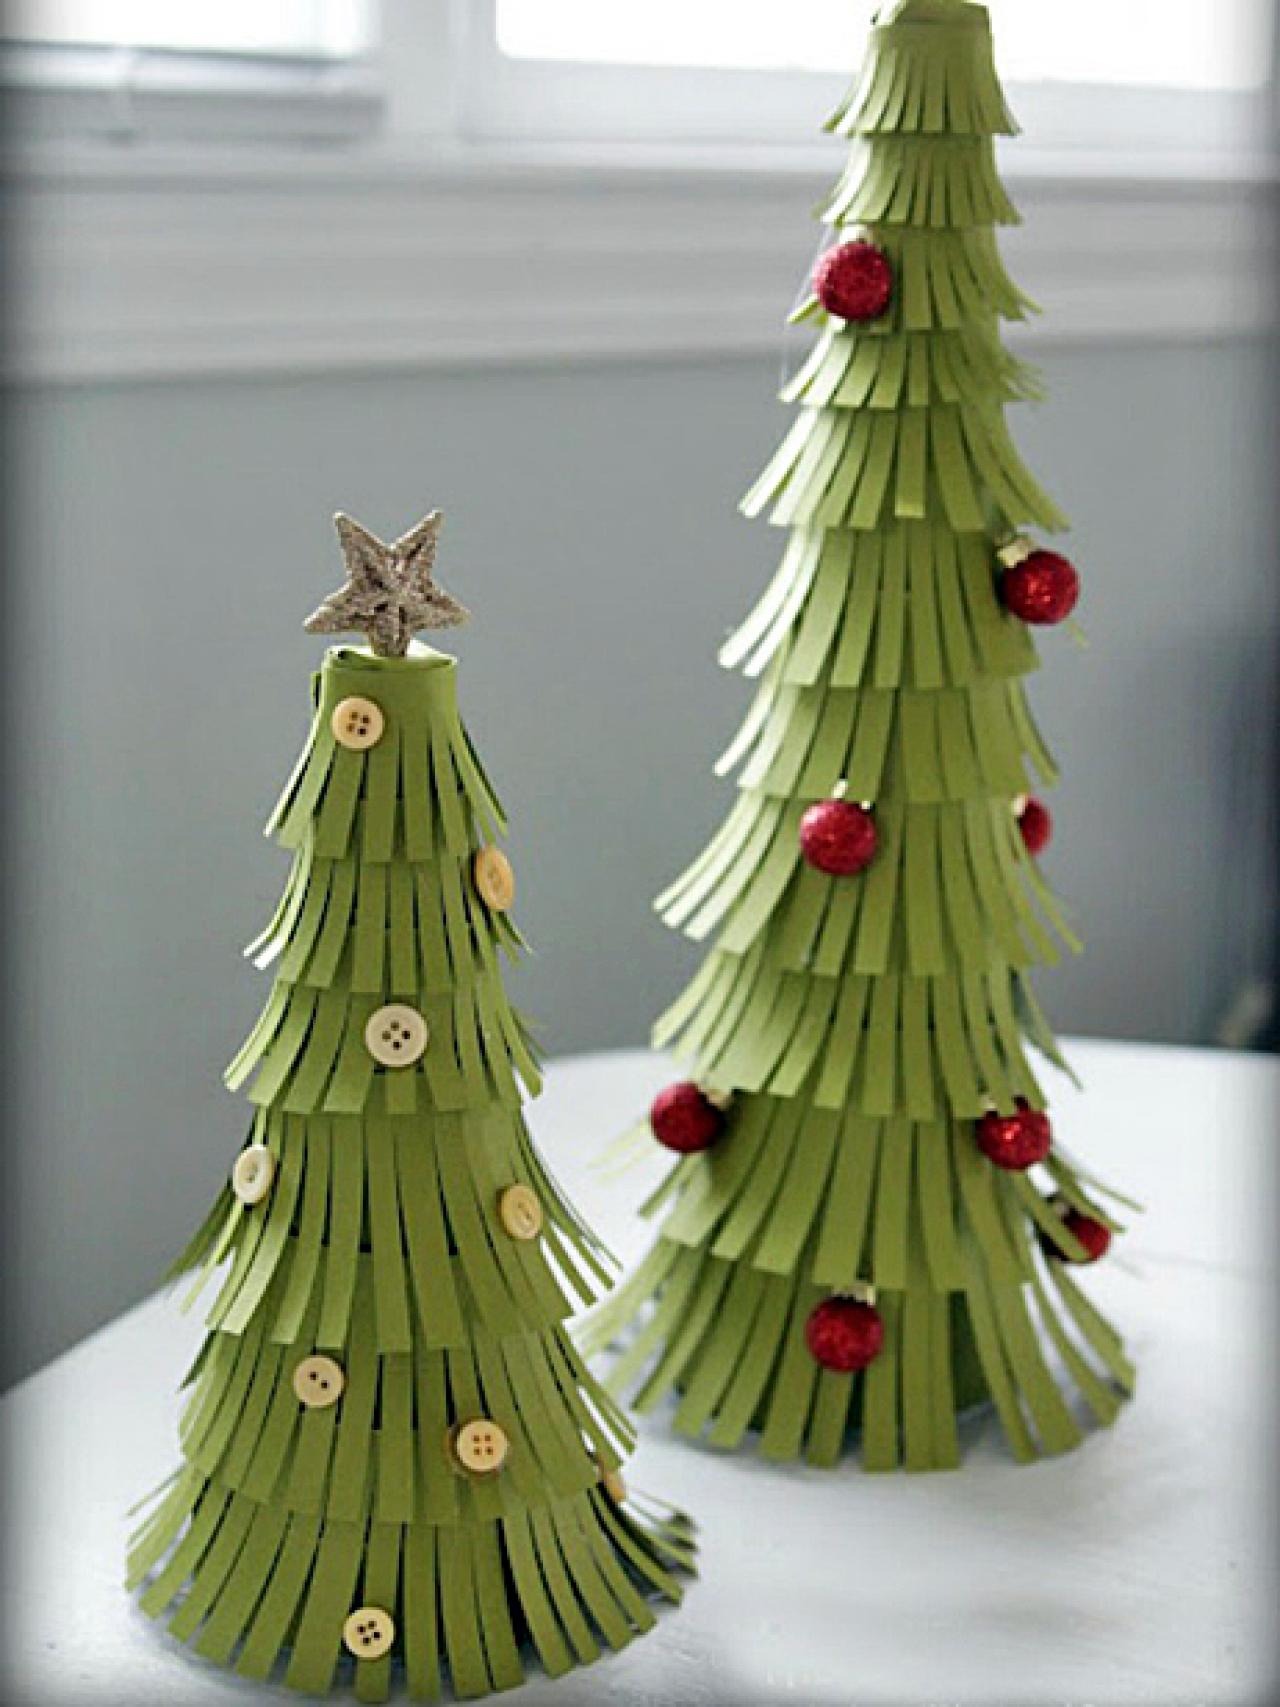 Pretty Paper Christmas Trees | HGTV